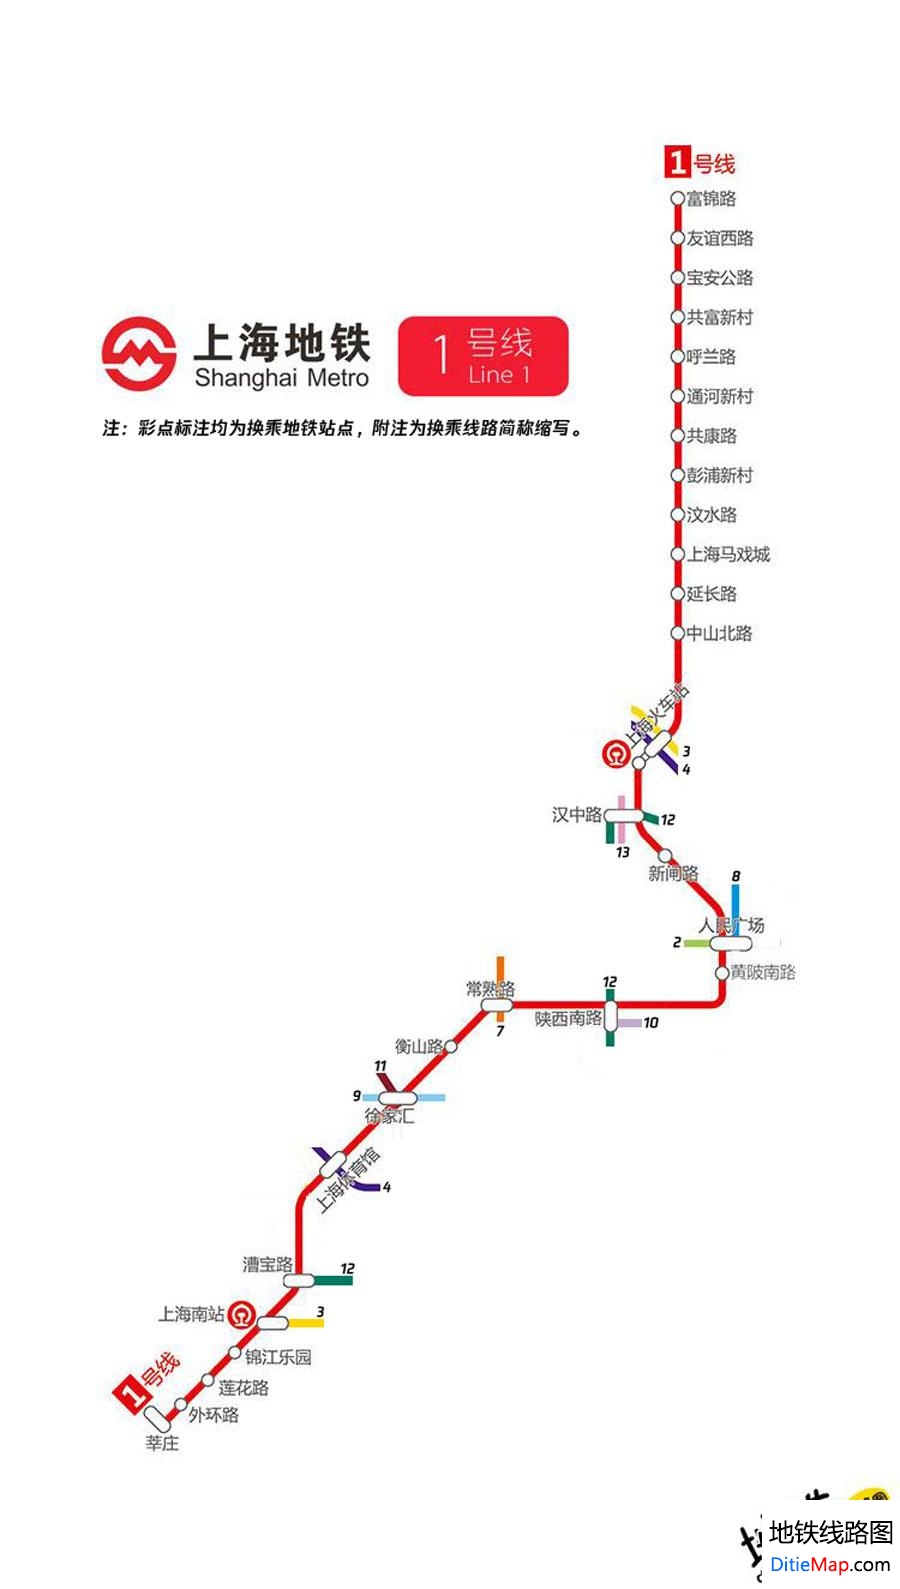 上海地铁1号线线路图 运营时间票价站点 查询下载 上海地铁1号线查询 上海地铁1号线运营时间 上海地铁1号线线路图 上海地铁1号线 上海地铁一号线 上海地铁线路图  第2张